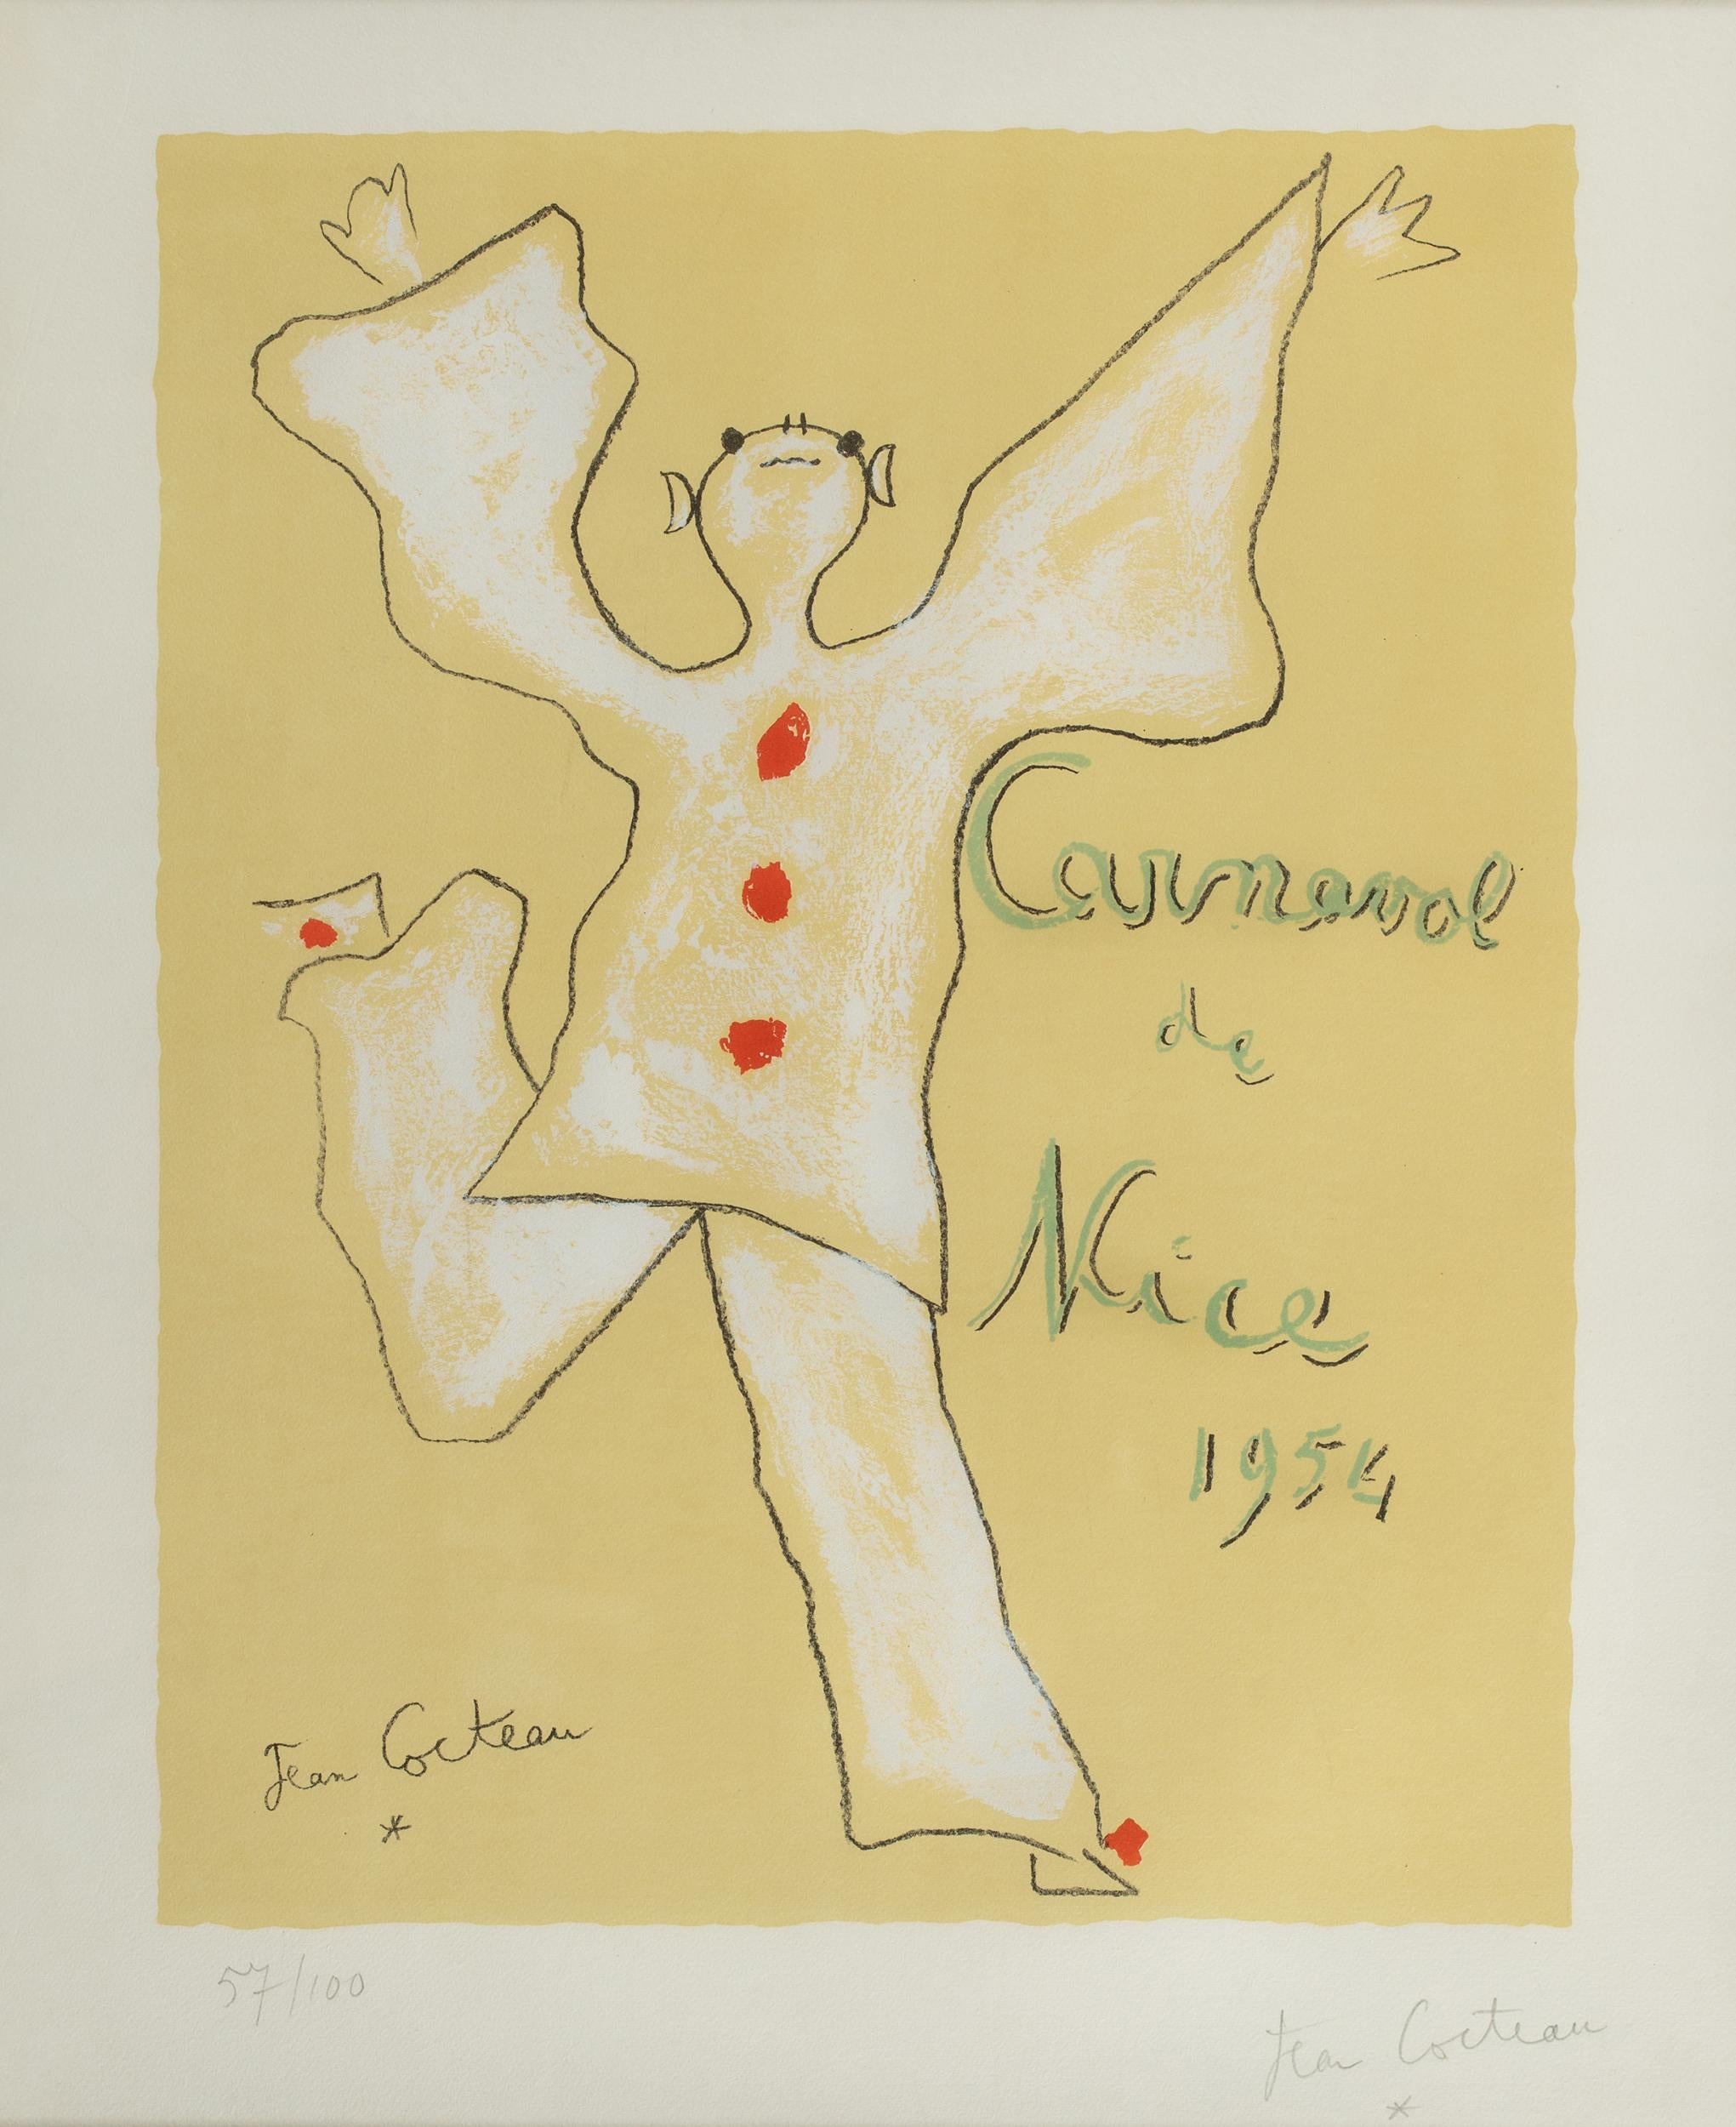 Ein fröhlicher Harlekin, mit nach oben gestreckten Armen und dem Gesicht zum Himmel, springt in die Mitte der Komposition. Diese Lithografie wurde von Jean Cocteau anlässlich des Karnevals in Nizza, Frankreich, im Jahr 1952 geschaffen. Das Werk ist